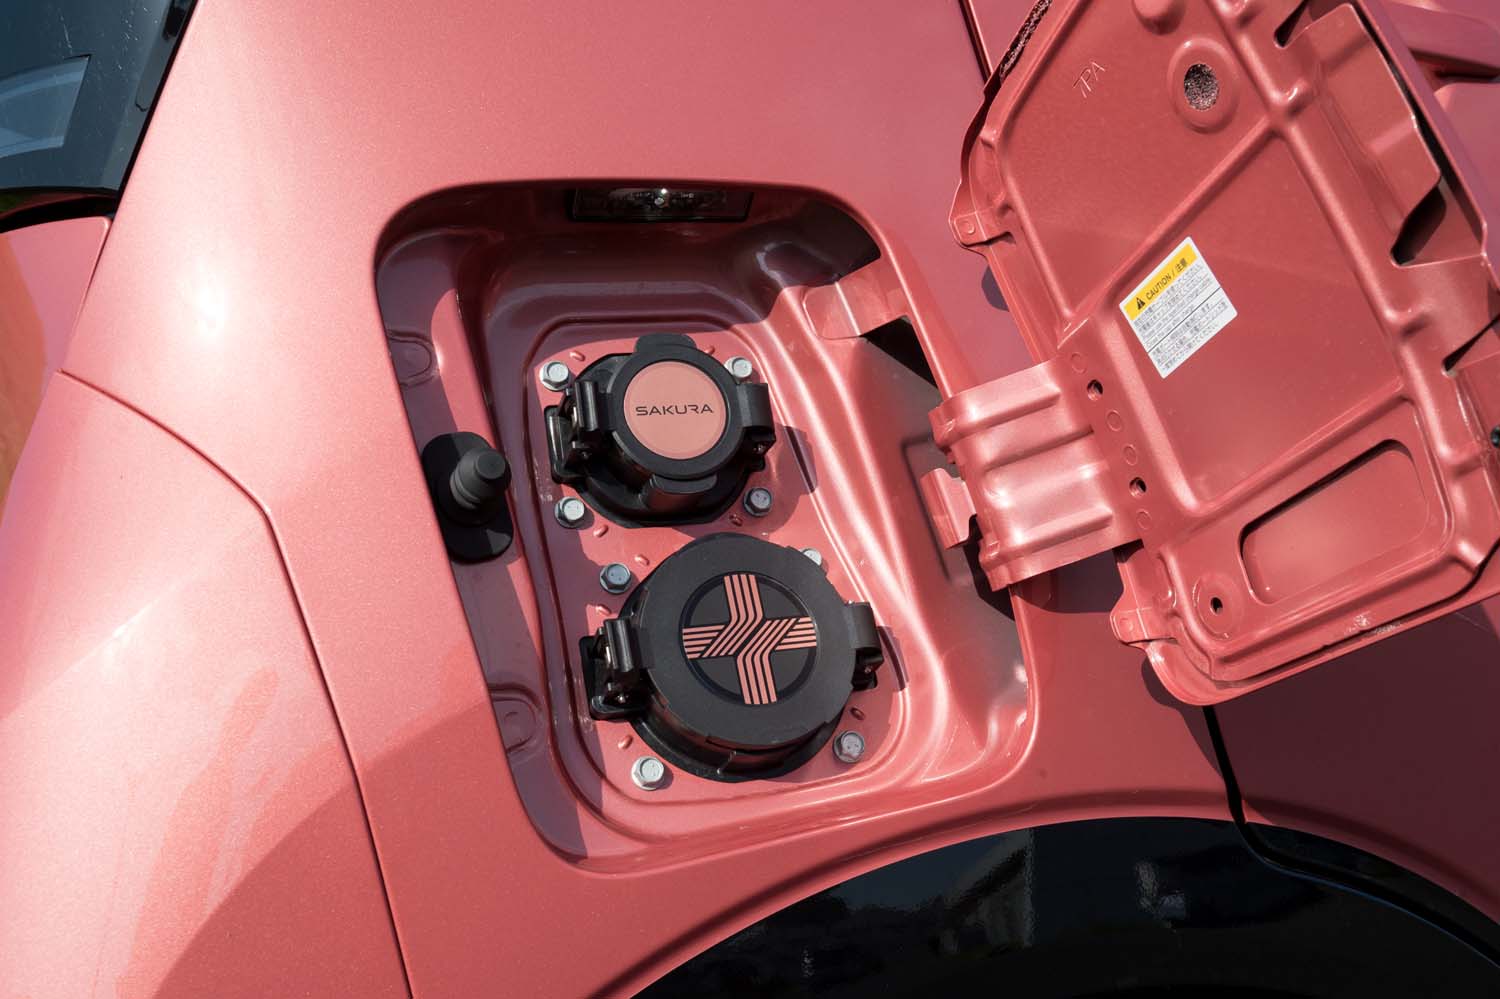 充電ポートは車体の右側後部に用意される。上の普通充電用には「SAKURA」ロゴが、下の急速充電用には水引模様があしらわれる。